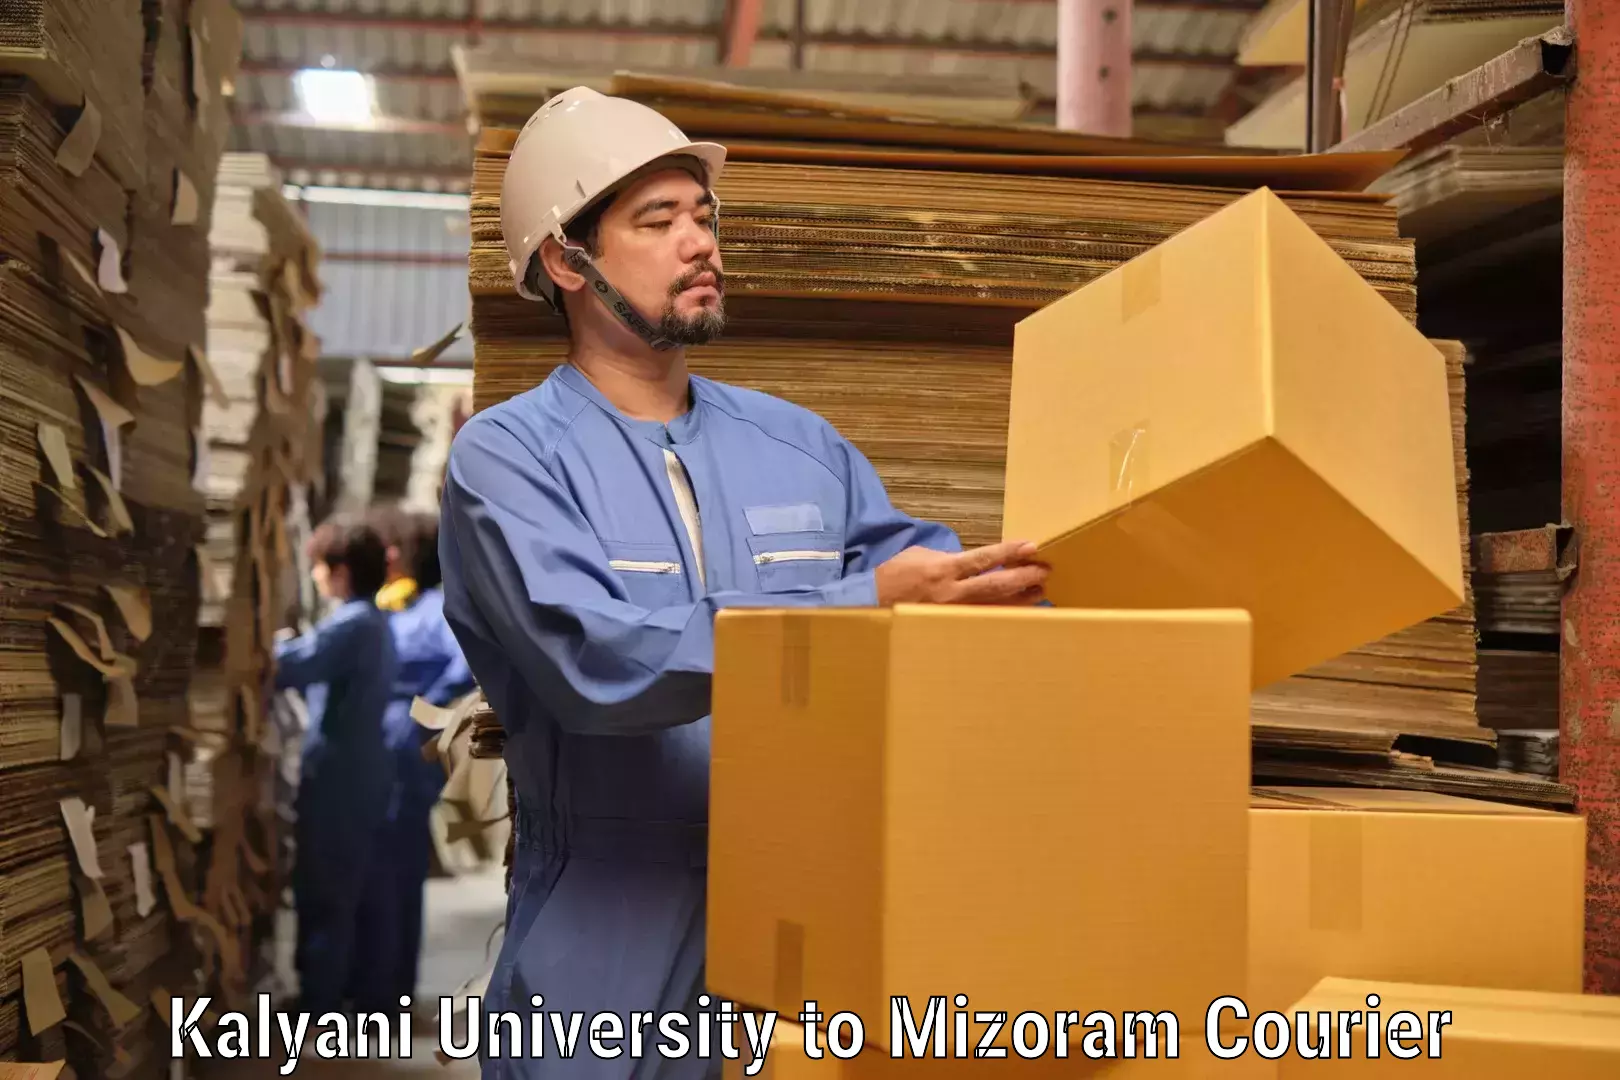 Premium courier services Kalyani University to Mizoram